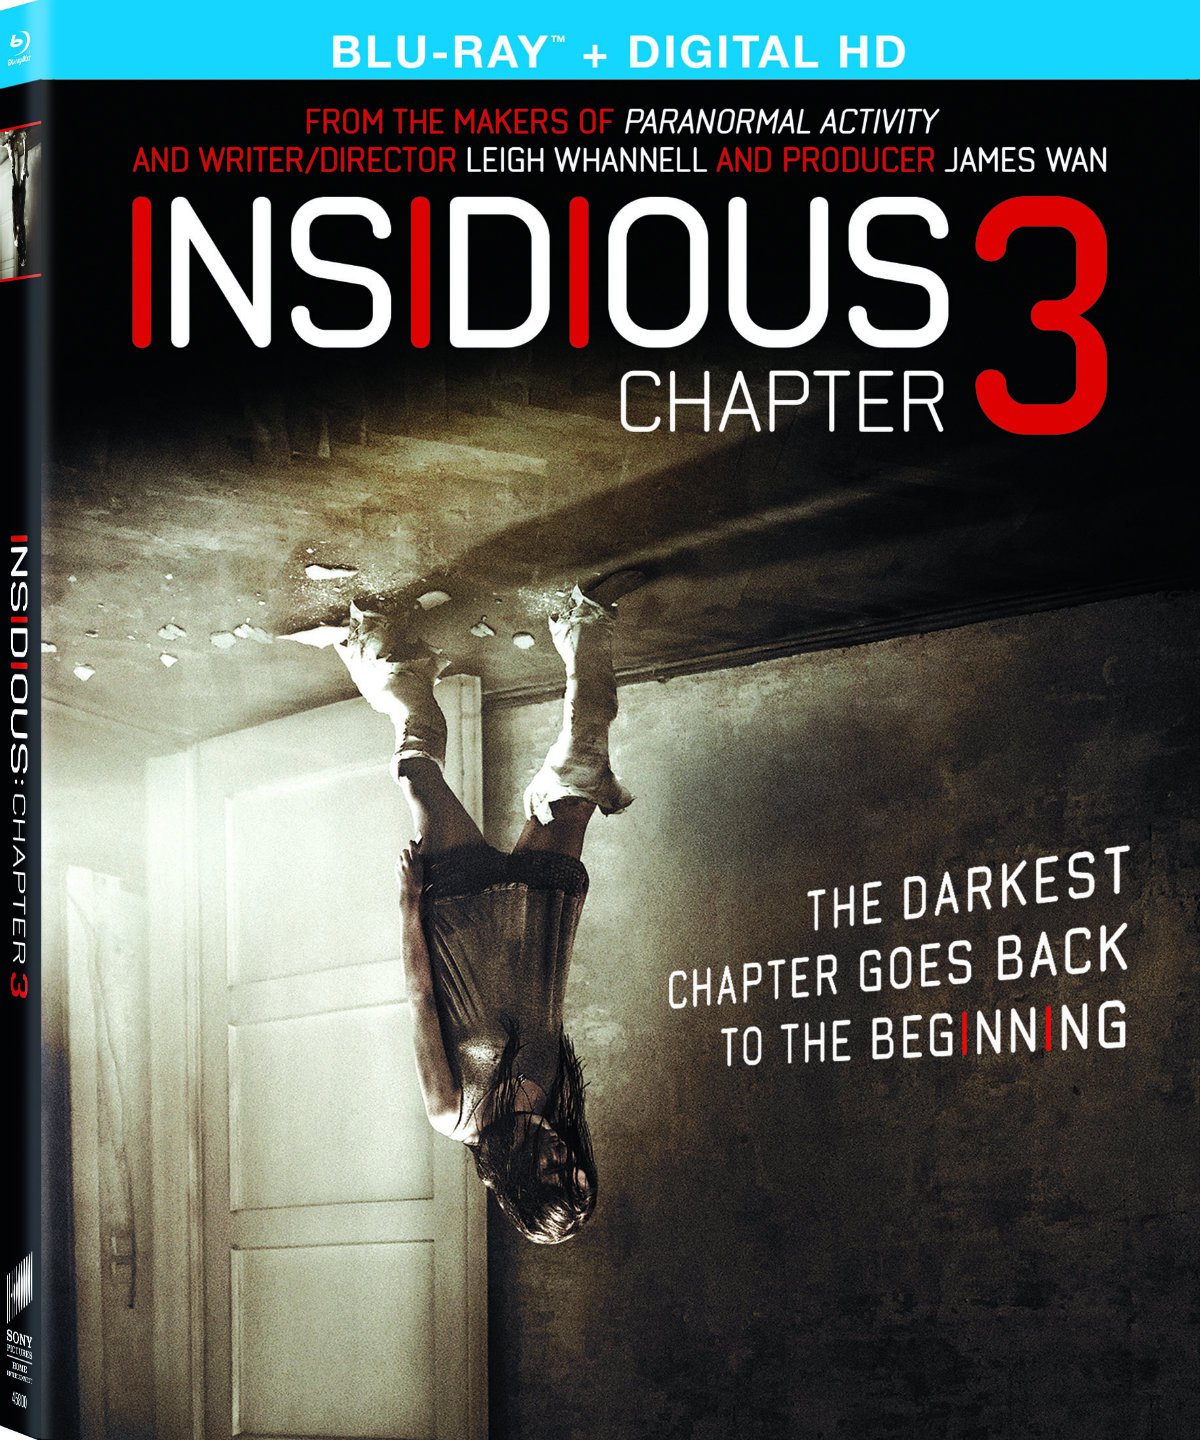 insidious chapter 3 kickass 720p 13